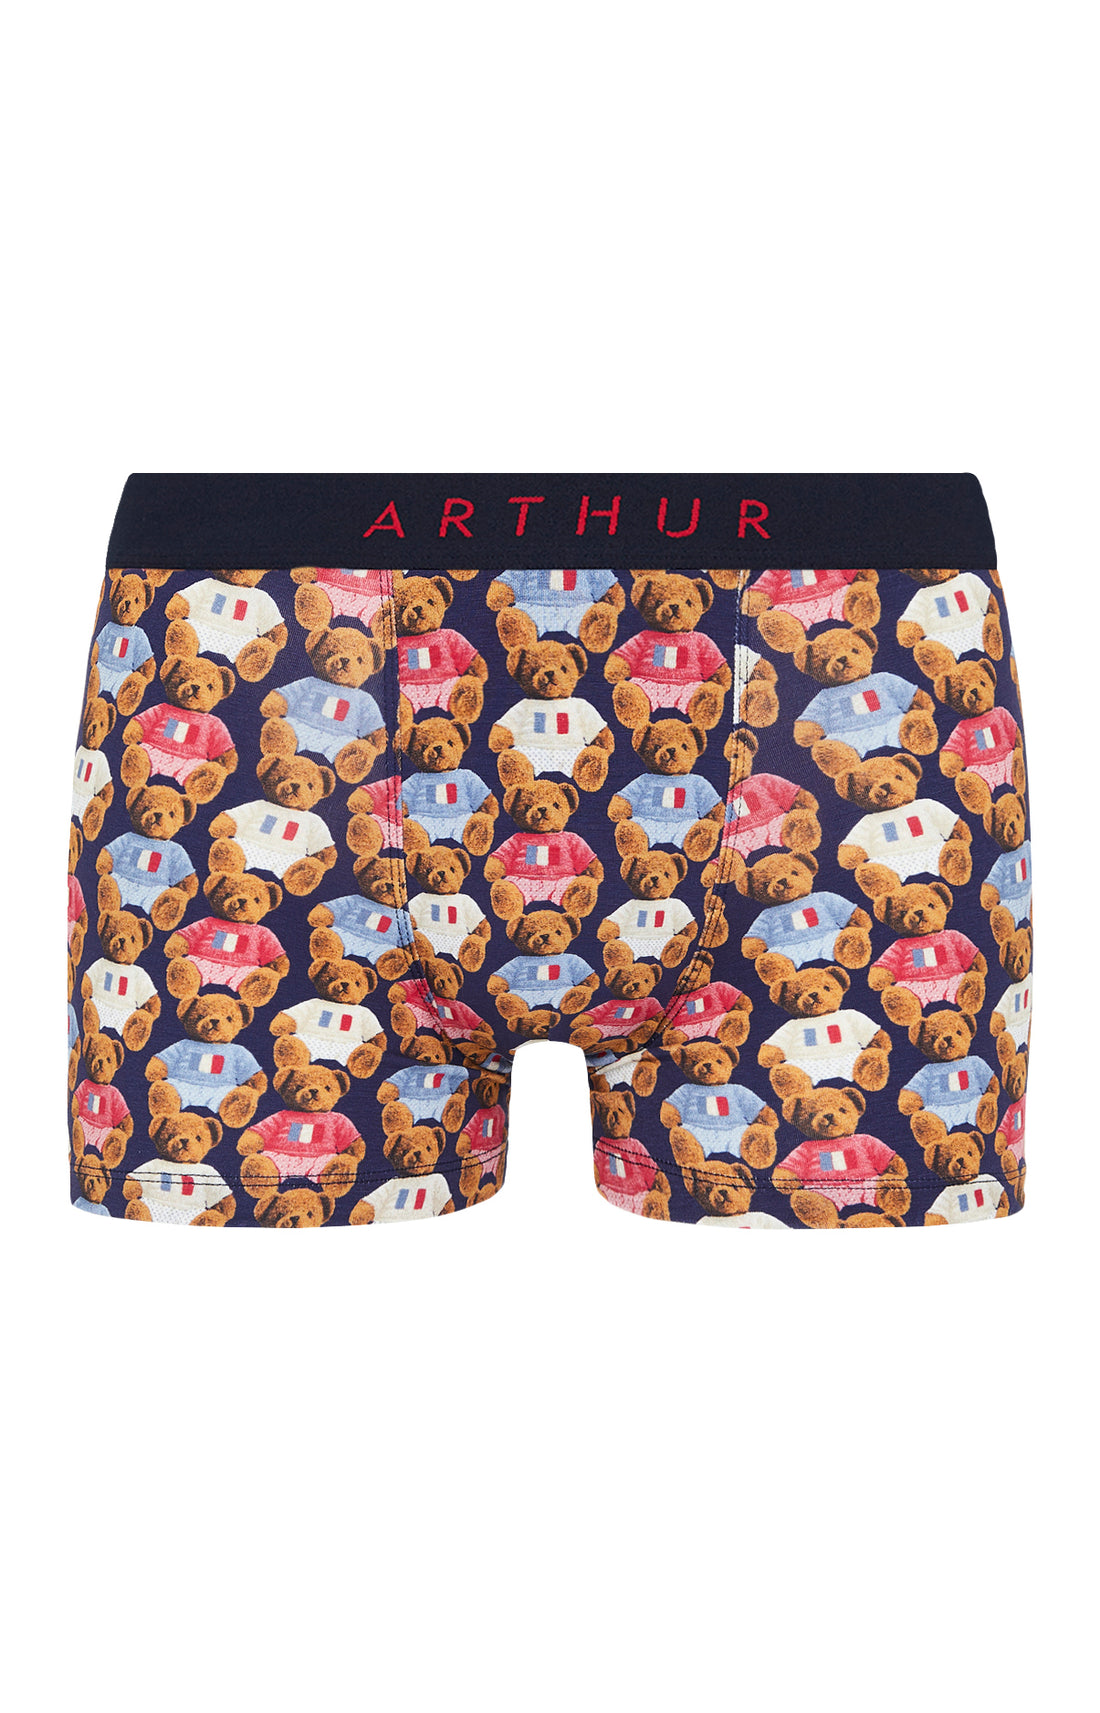 Teddy Boxer short  Men's underwear – Arthur